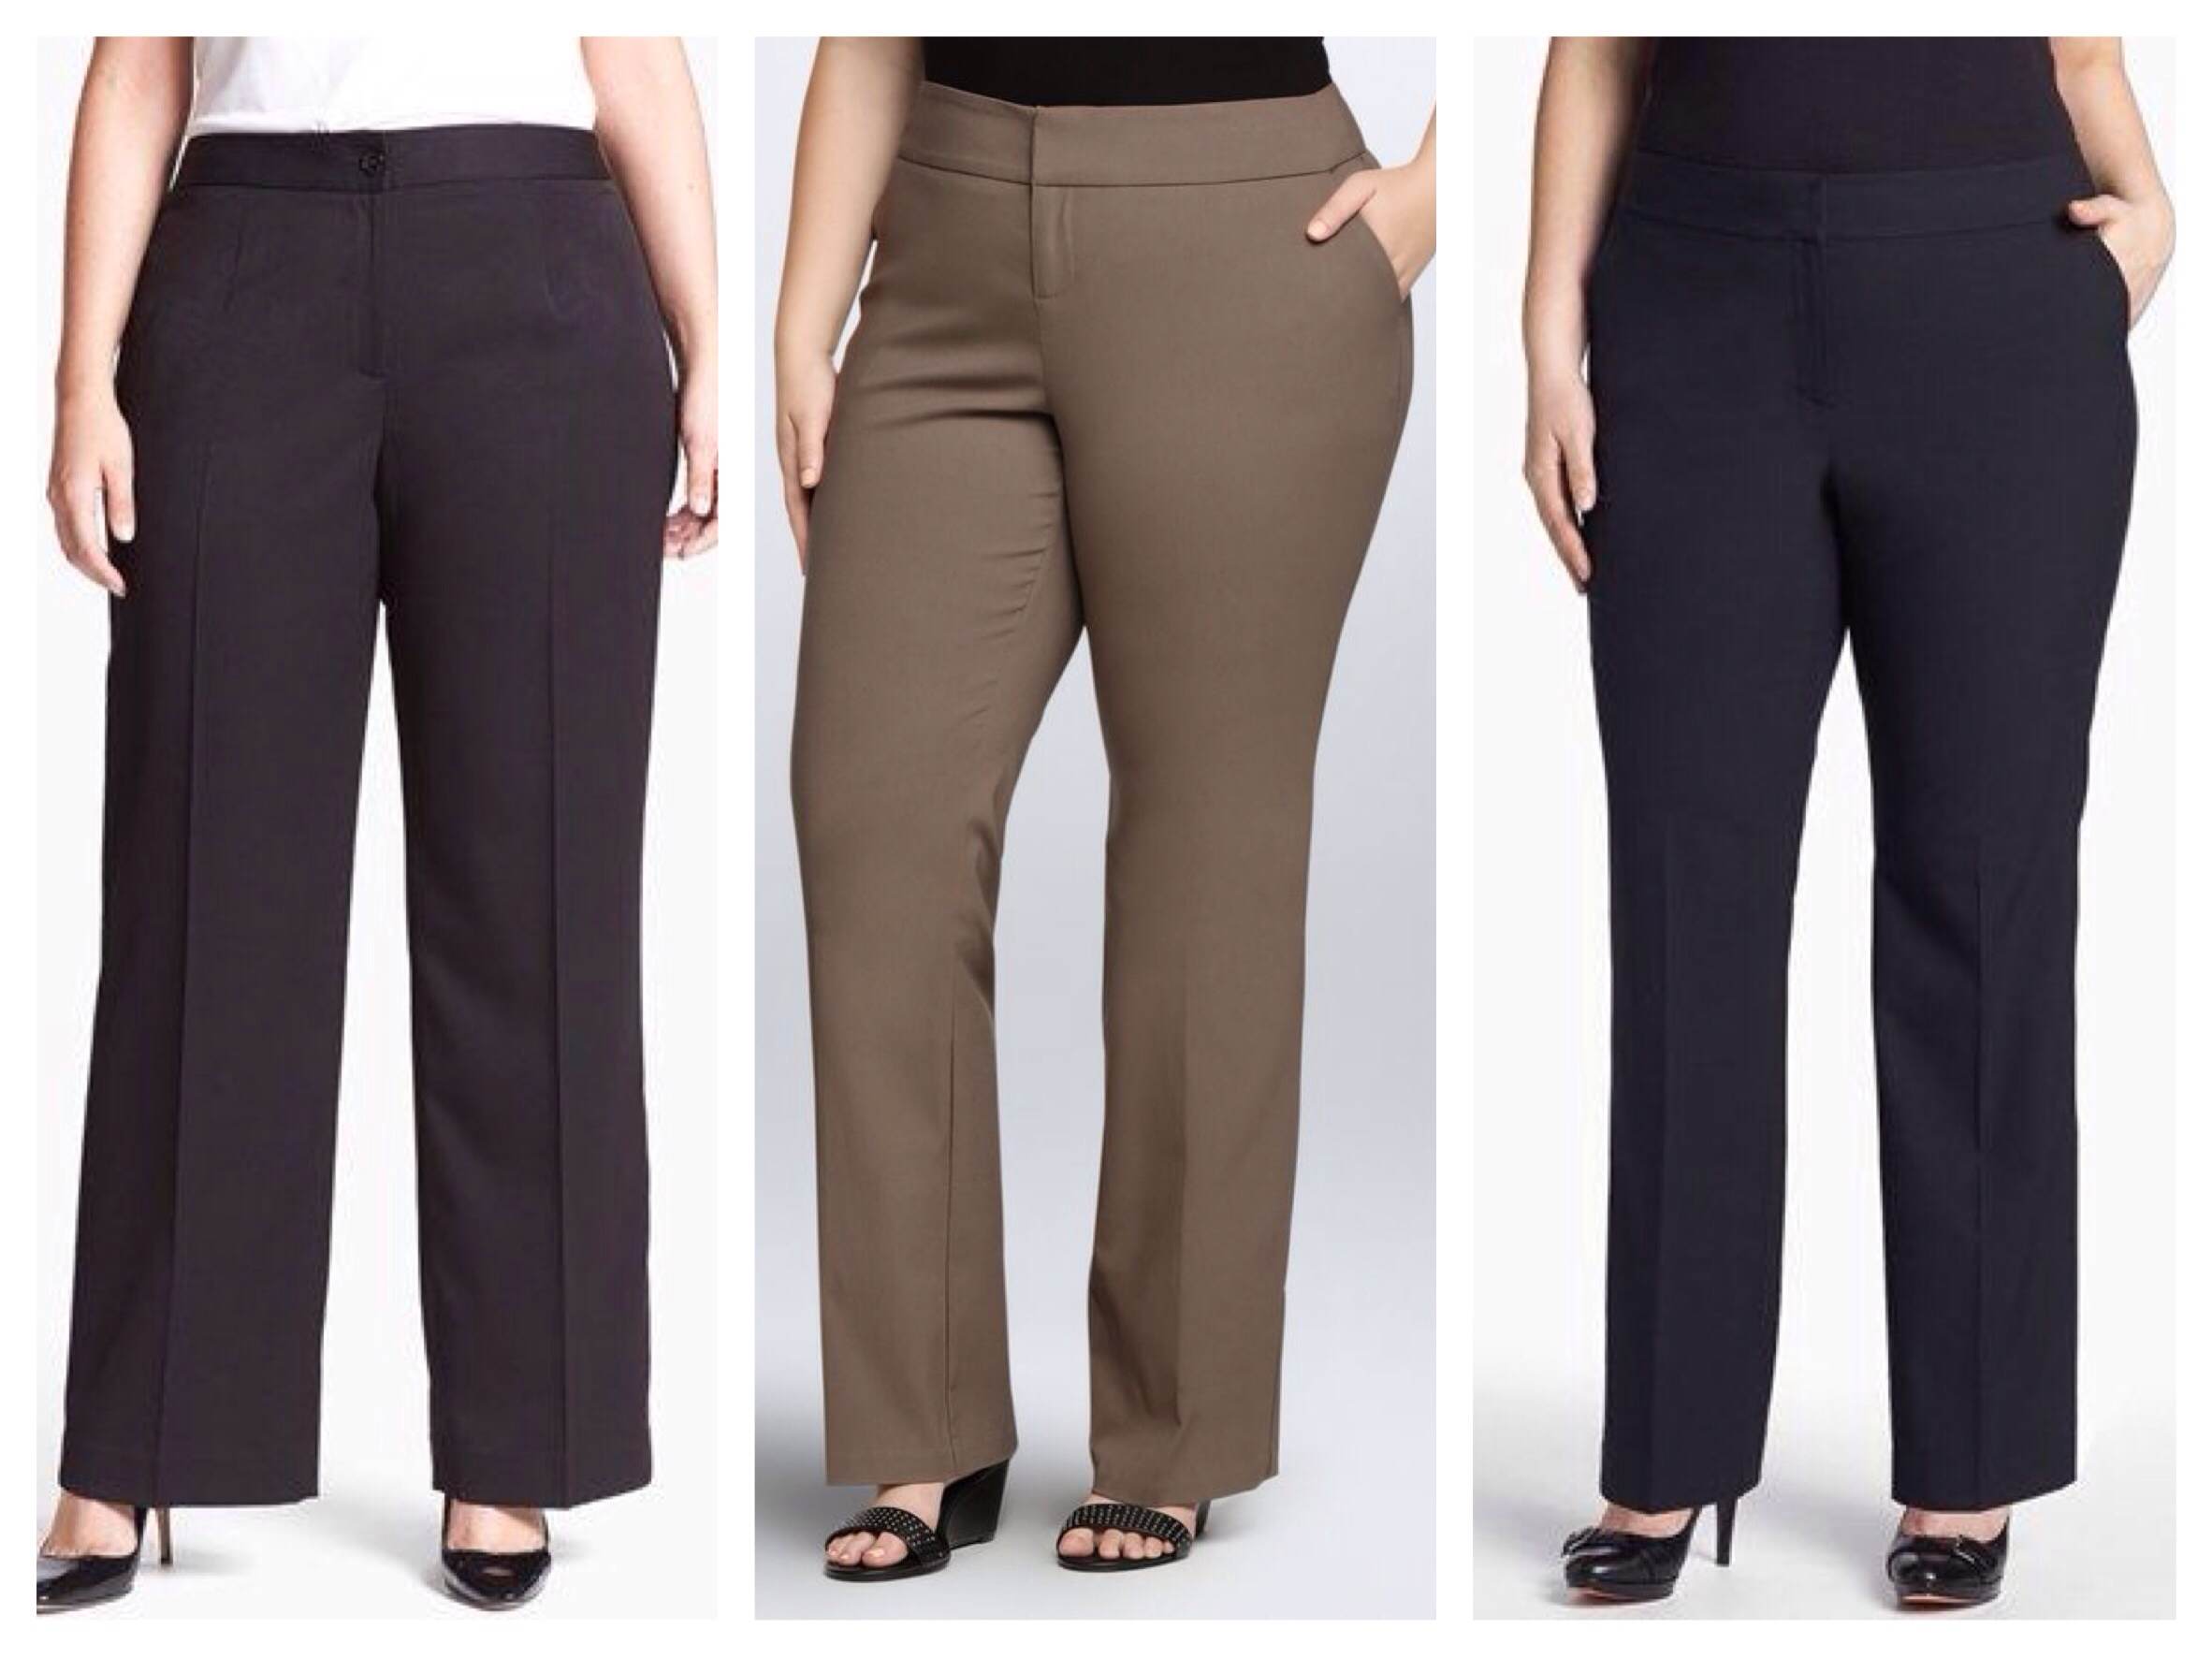 Как выбрать женские брюки по фигуре, длине и цвету?